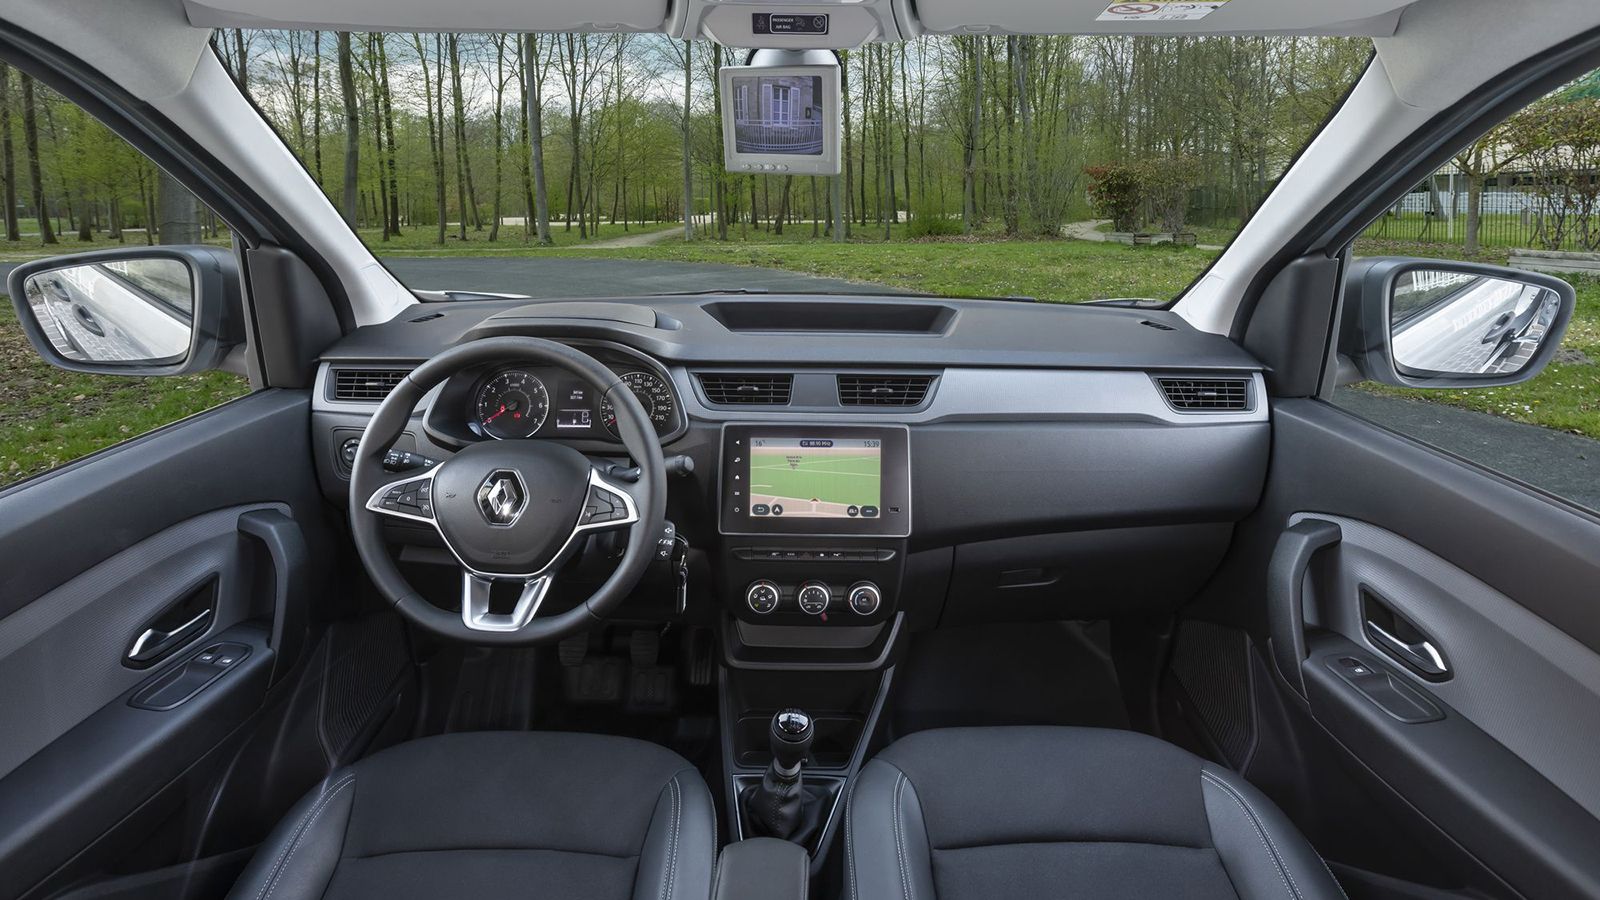 Όμορφο, πλούσια εξοπλισμένο και λειτουργικό το σαλόνι, όπου κυριαρχεί το σύστημα πολυμέσων, Renault EASY LINK, με την οθόνη αφής των 8 ιντσών.